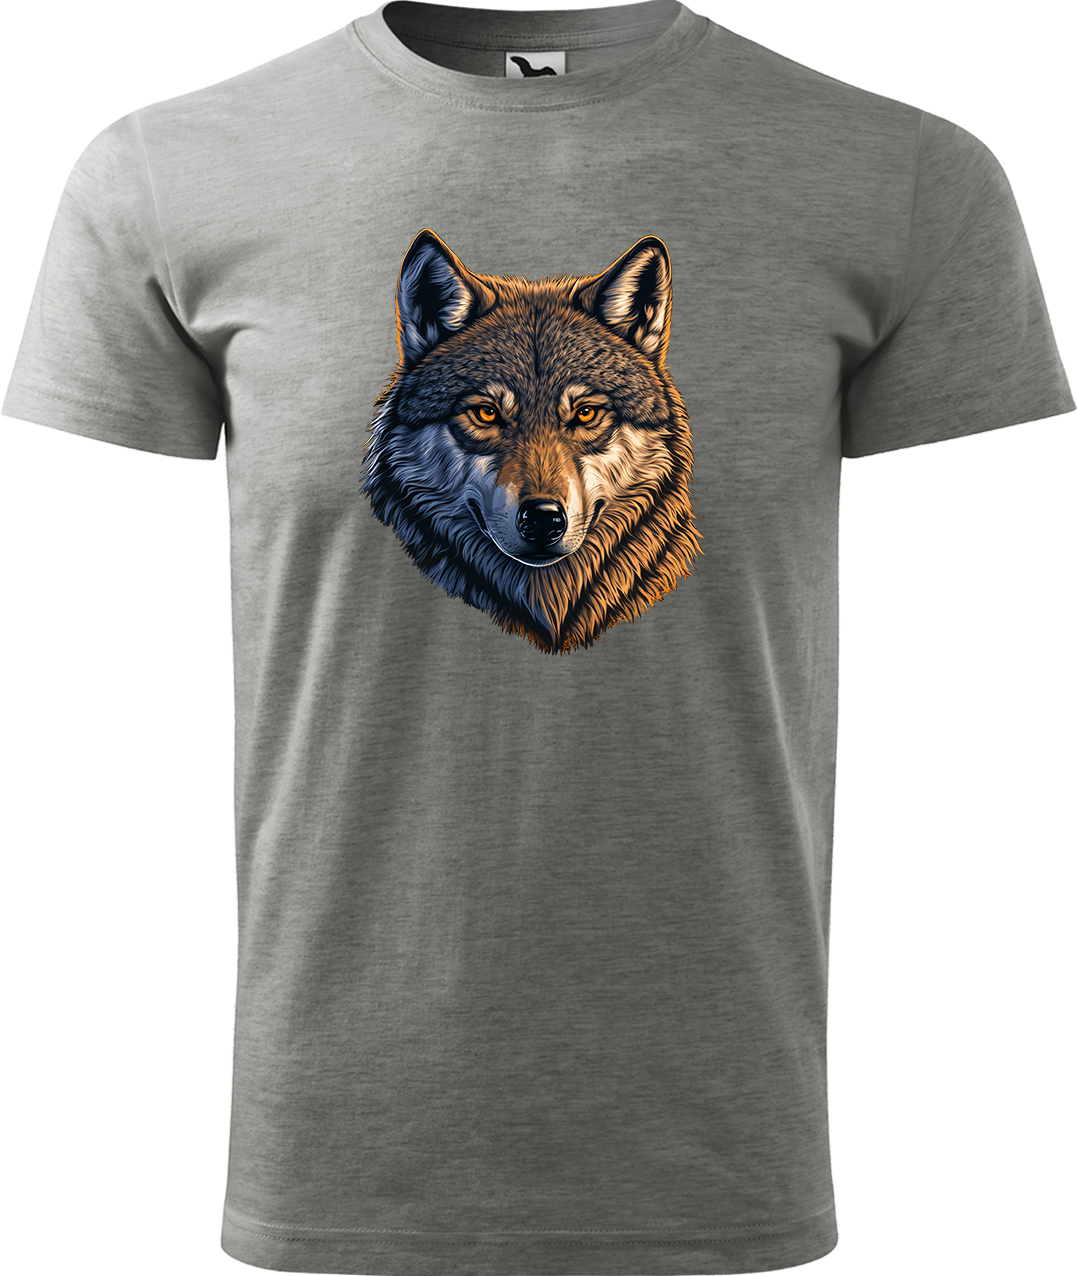 Pánské tričko s vlkem - Hlava vlka Velikost: 2XL, Barva: Tmavě šedý melír (12), Střih: pánský